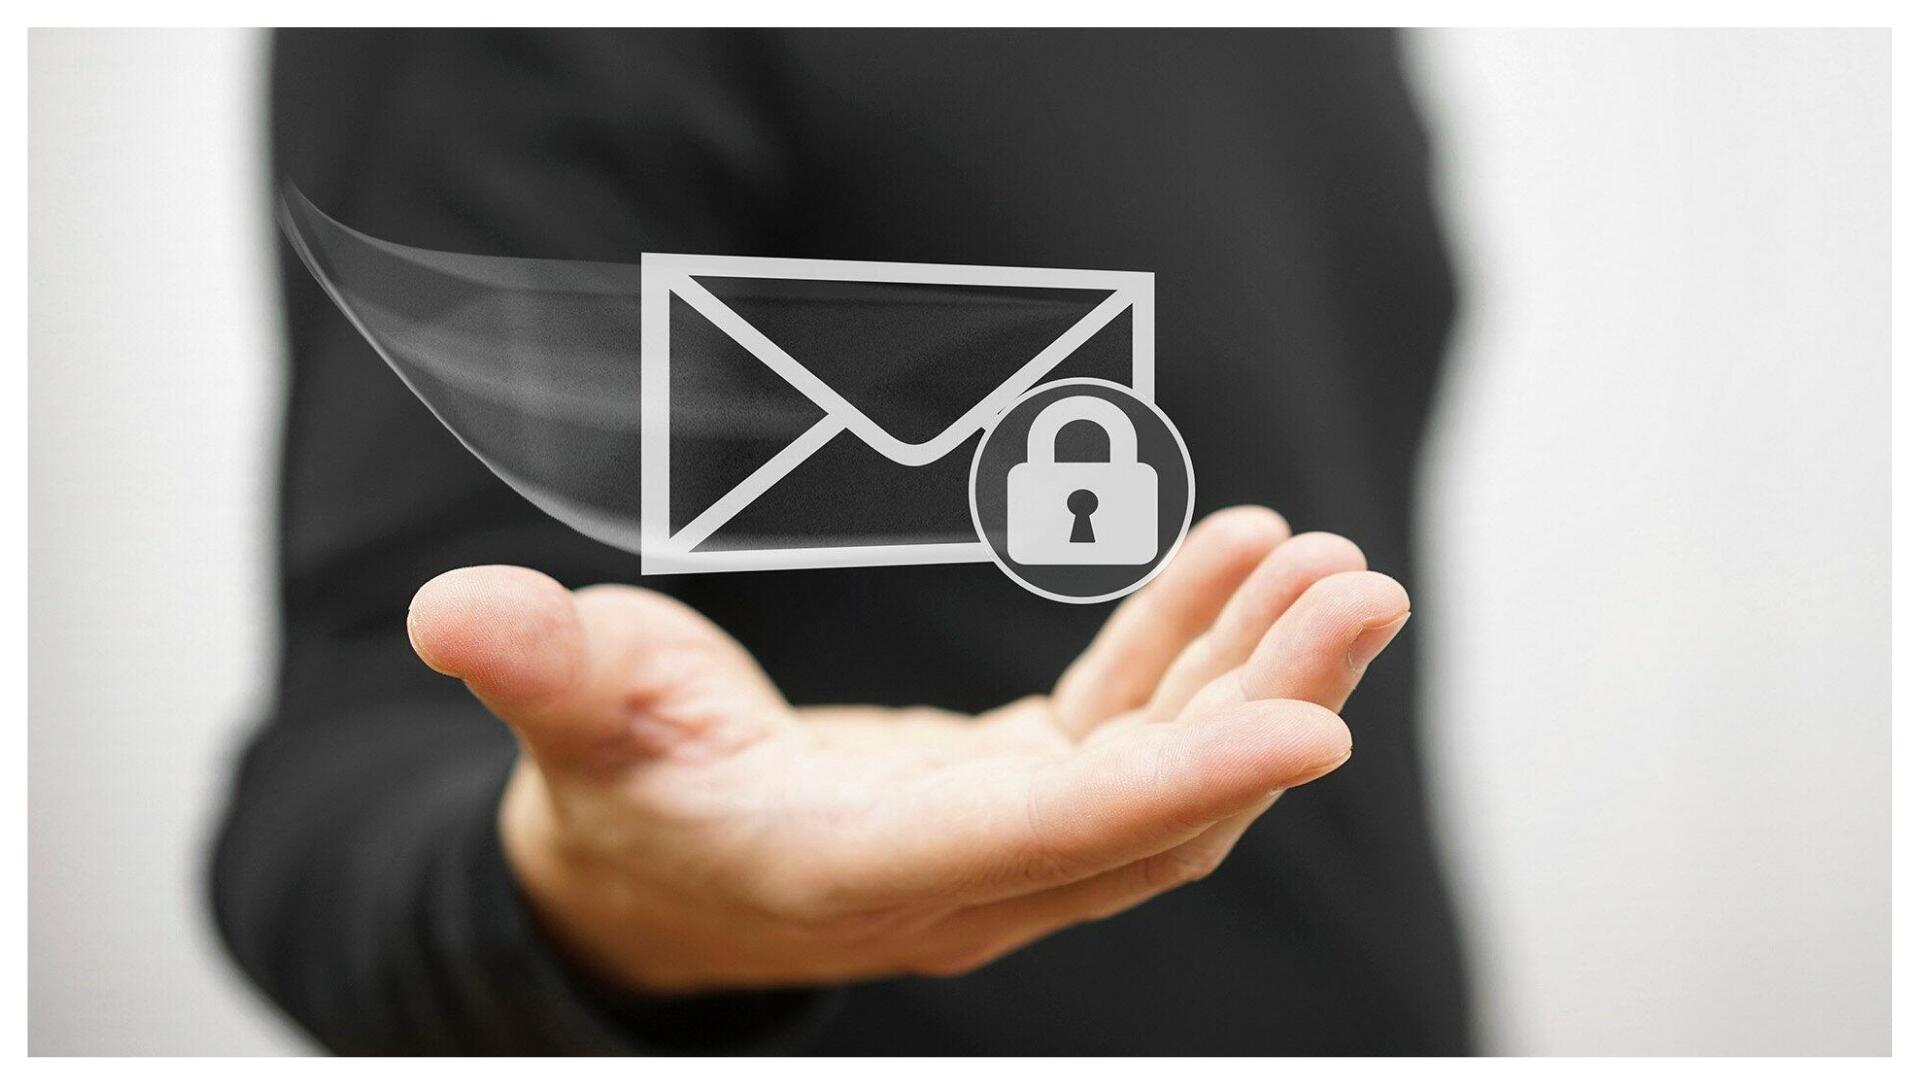 Tận hưởng lợi ích hiệu quả giao tiếp với dịch vụ Email doanh nghiệp